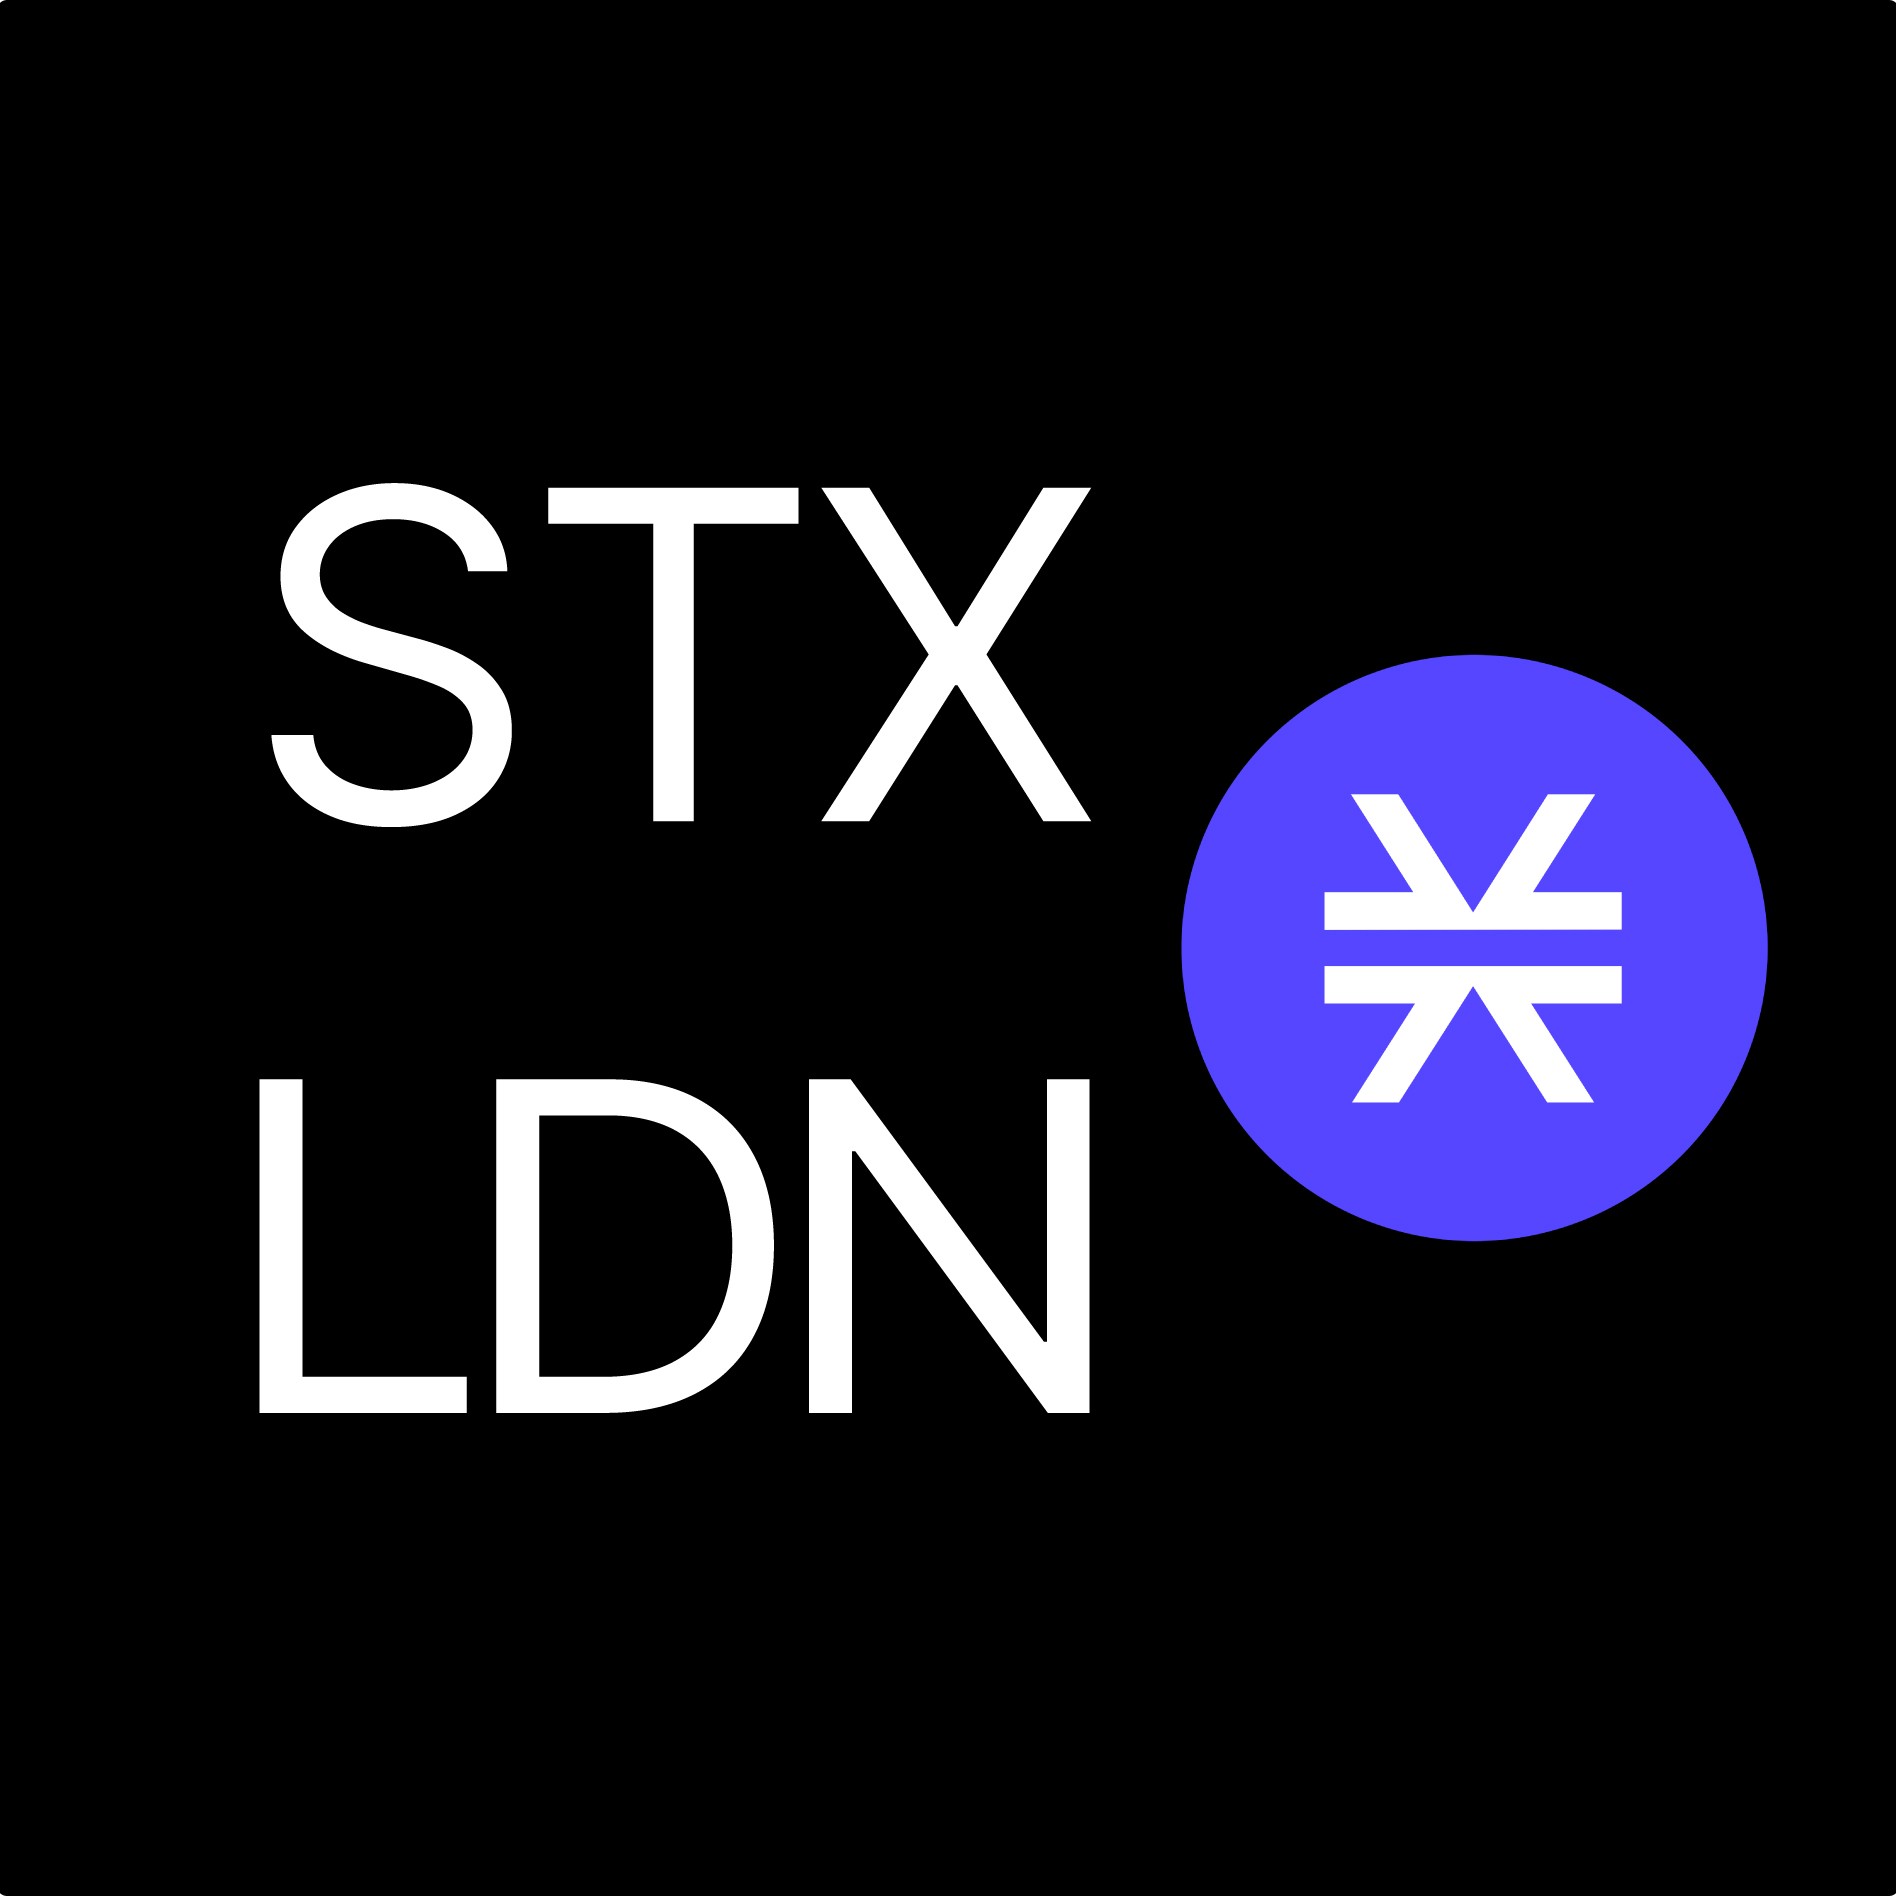 STX:LDN logo